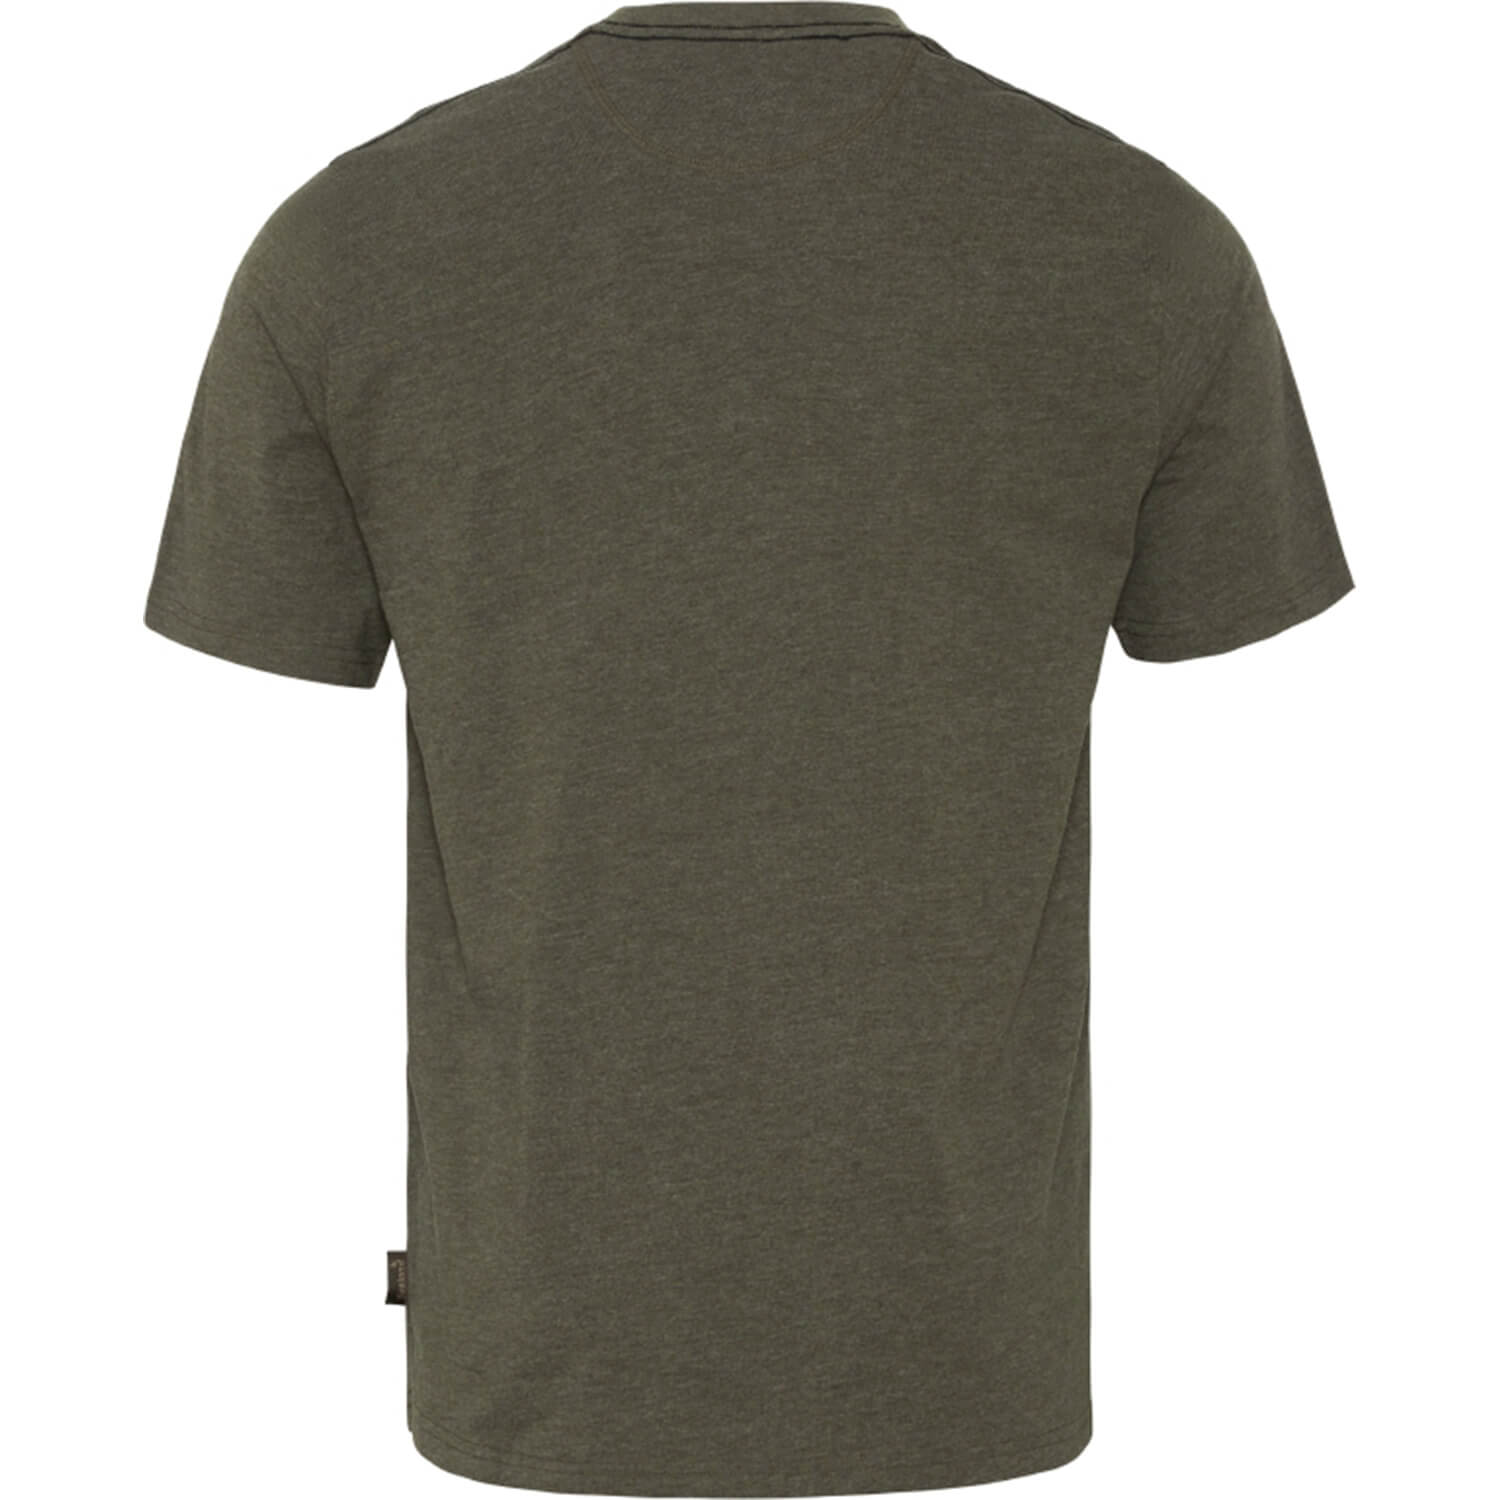 Seeland T-Shirt Outdoor (Pine Green Melange)